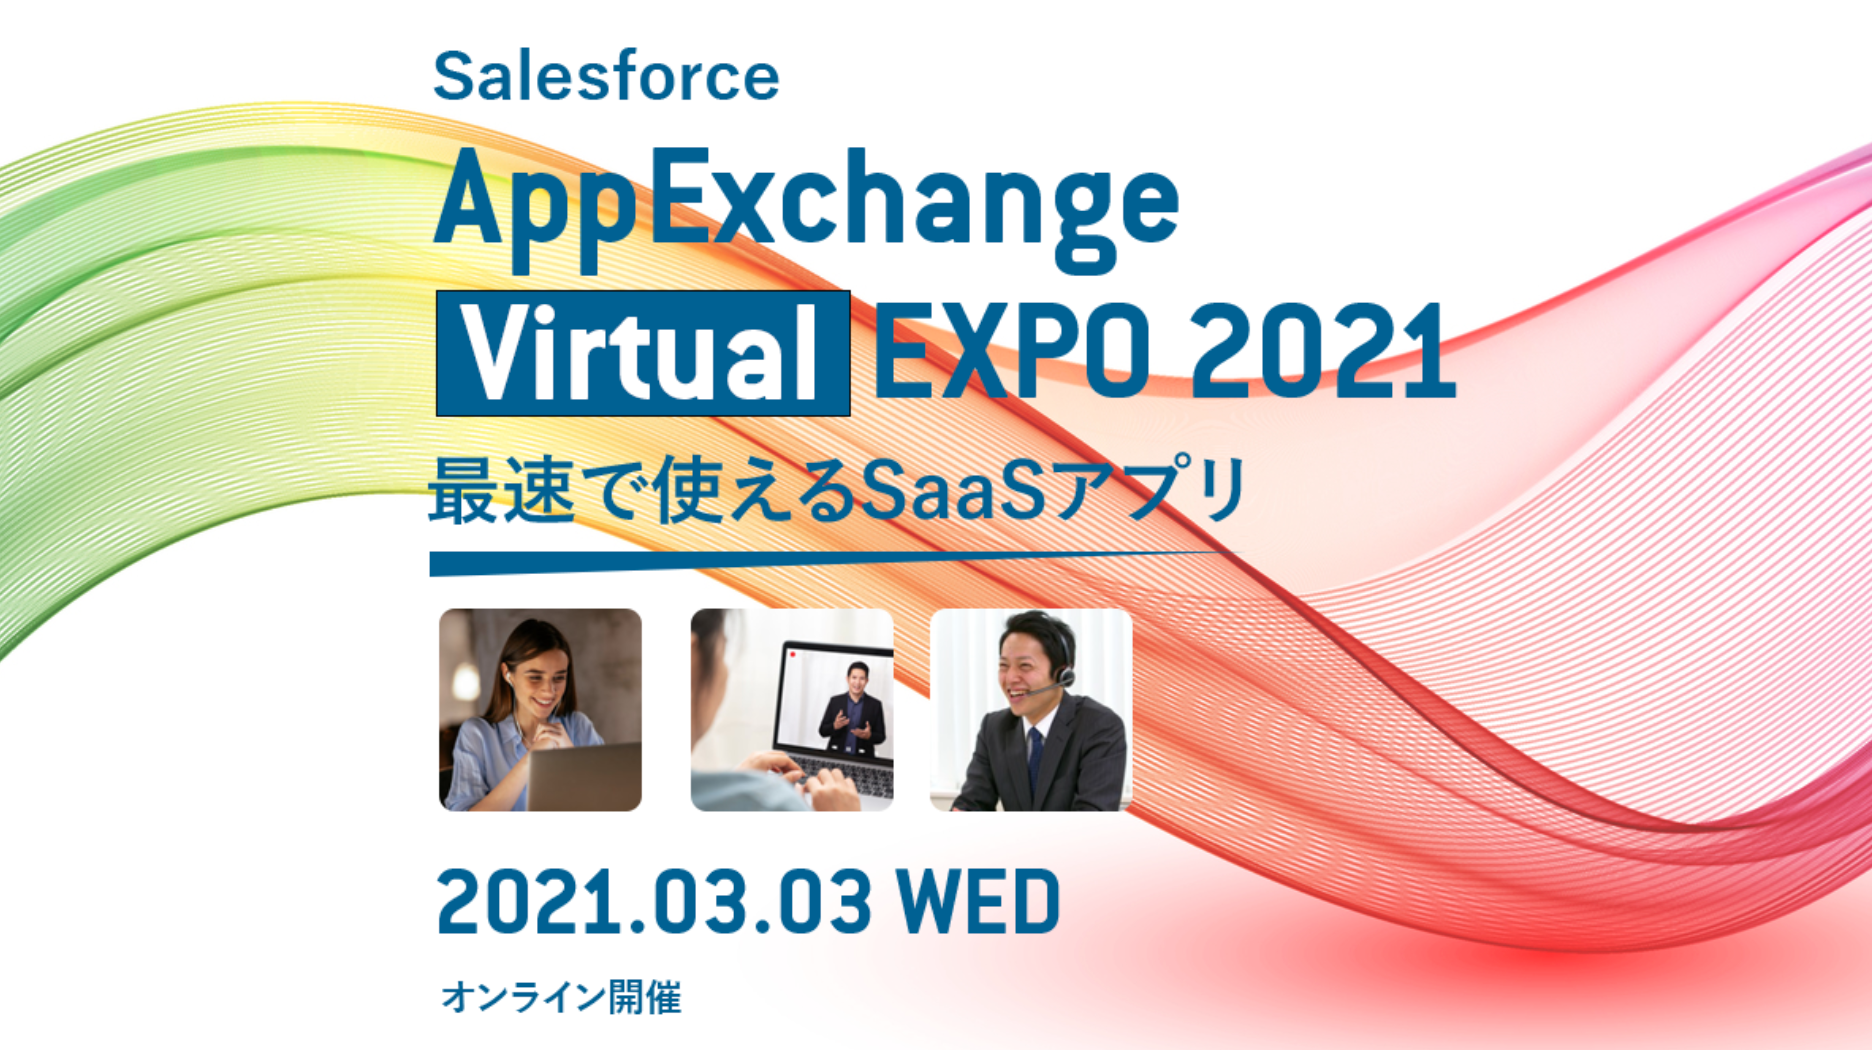 AppExchange Virtual EXPO 2021